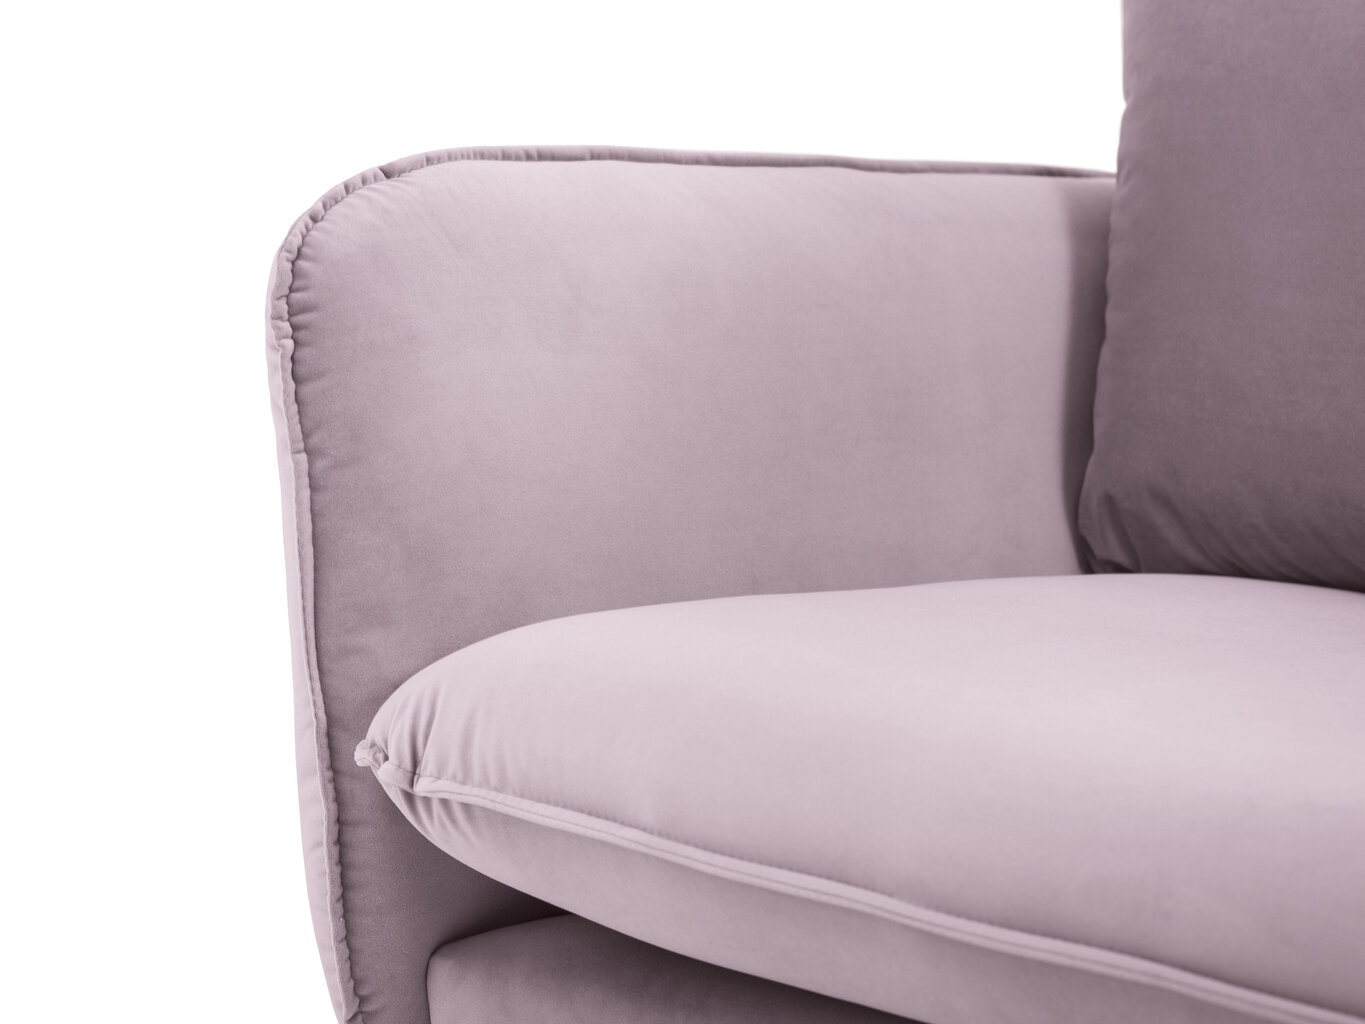 Trivietė sofa Cosmopolitan Design Vienna, rožinė kaina ir informacija | Sofos | pigu.lt